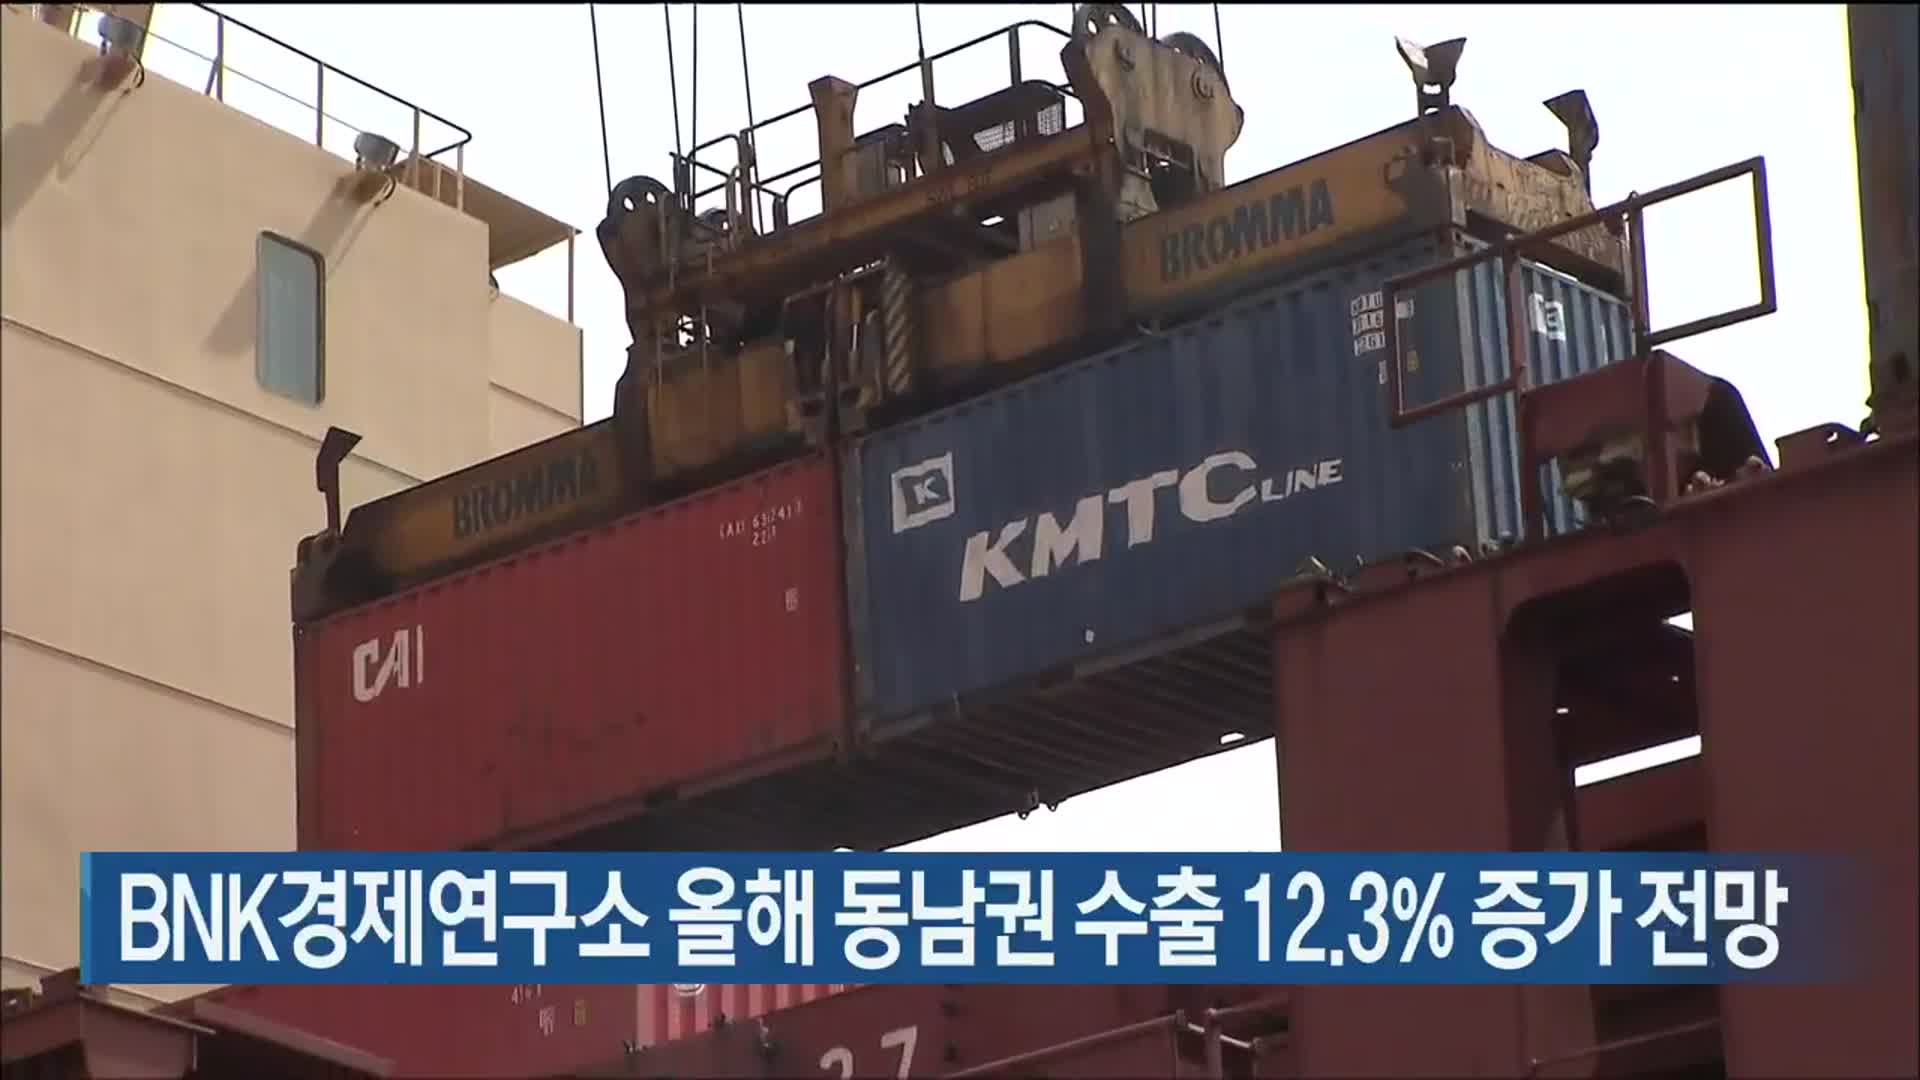 BNK경제연구소 올해 동남권 수출 12.3% 증가 전망